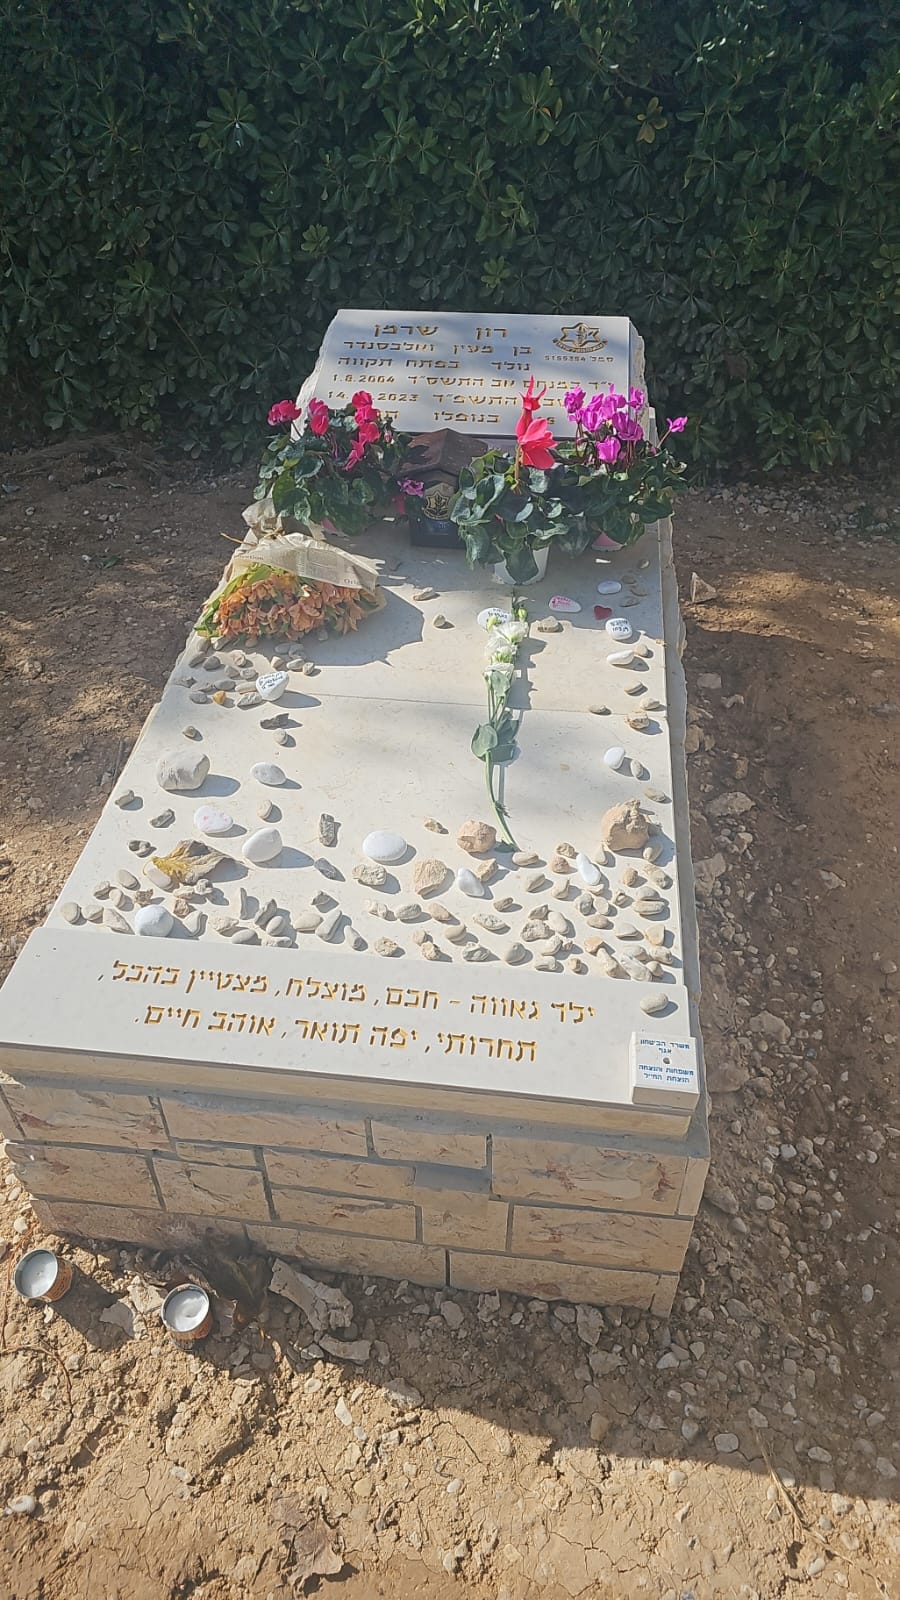 والدة الجندي الإسرائيلي عرضت صورة القبر وقد أزيل عنه الشاهد الذي كُتب عليه انتقادات لاذعة للجيش